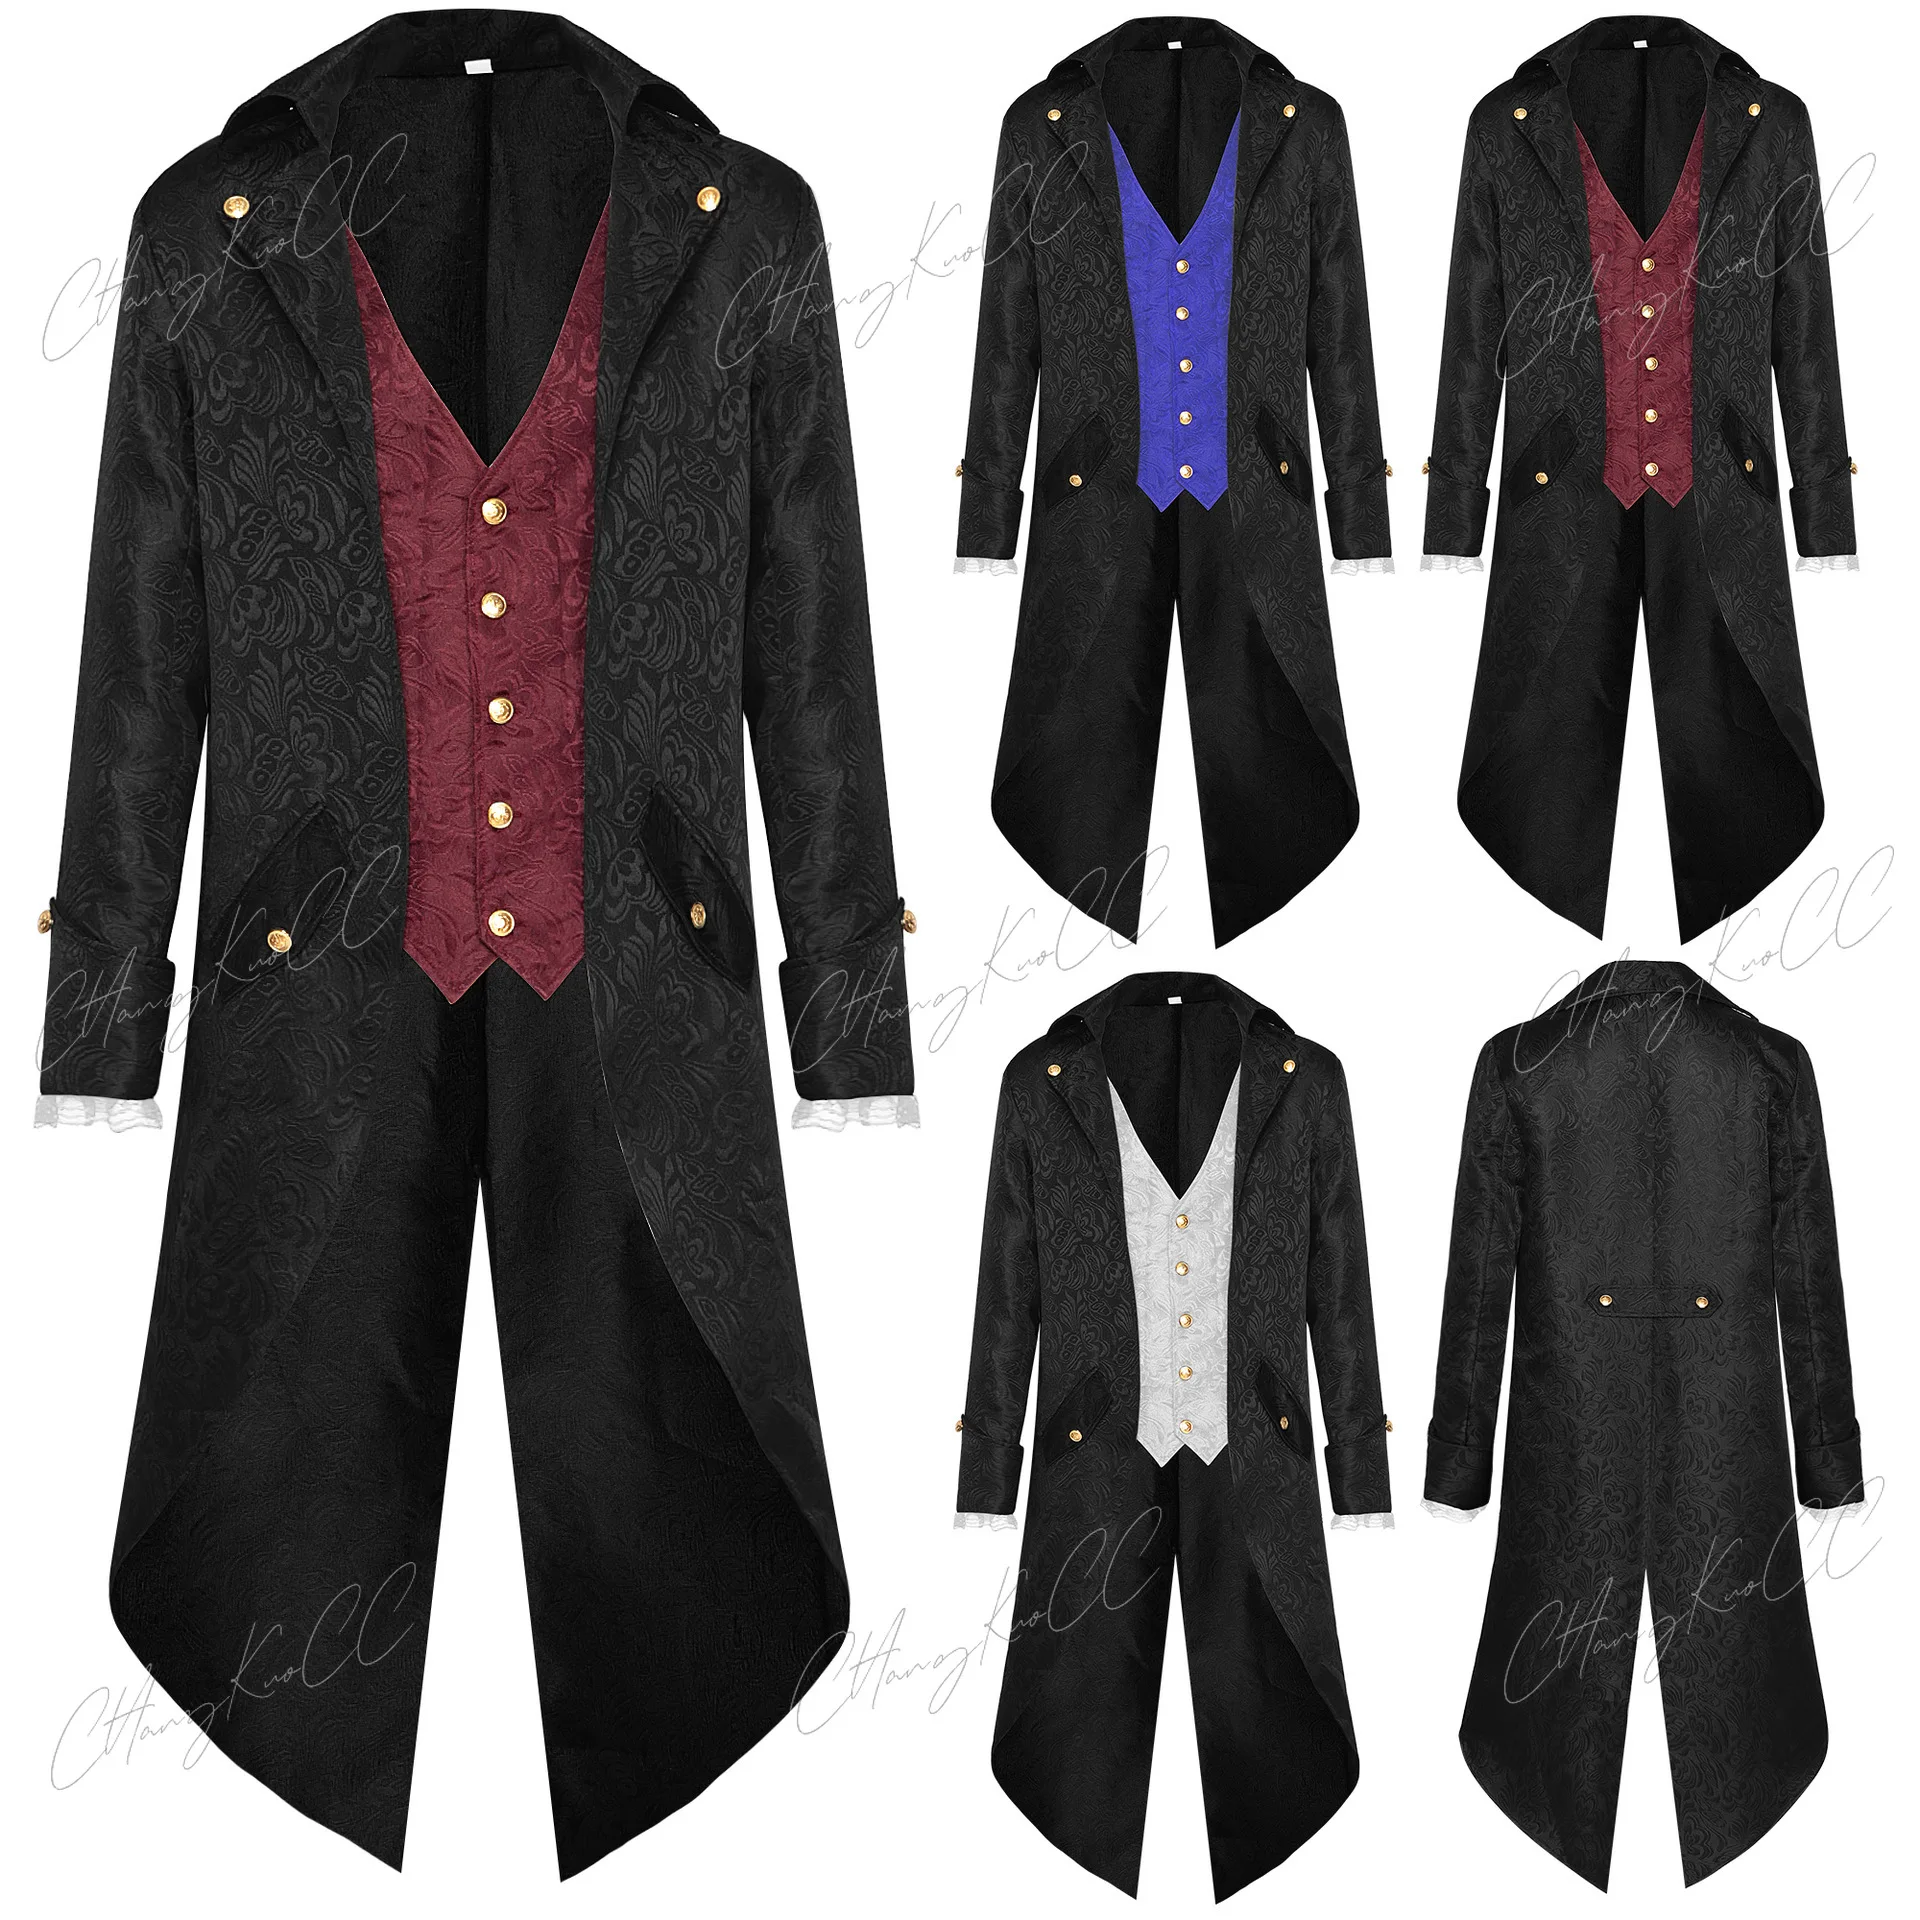 

Men Steampunk Gothic Victorian Jacket Vintage Purple Velvet Tailcoat Medieval Frock Coat Uniform Renaissance Costume Homme 4XL